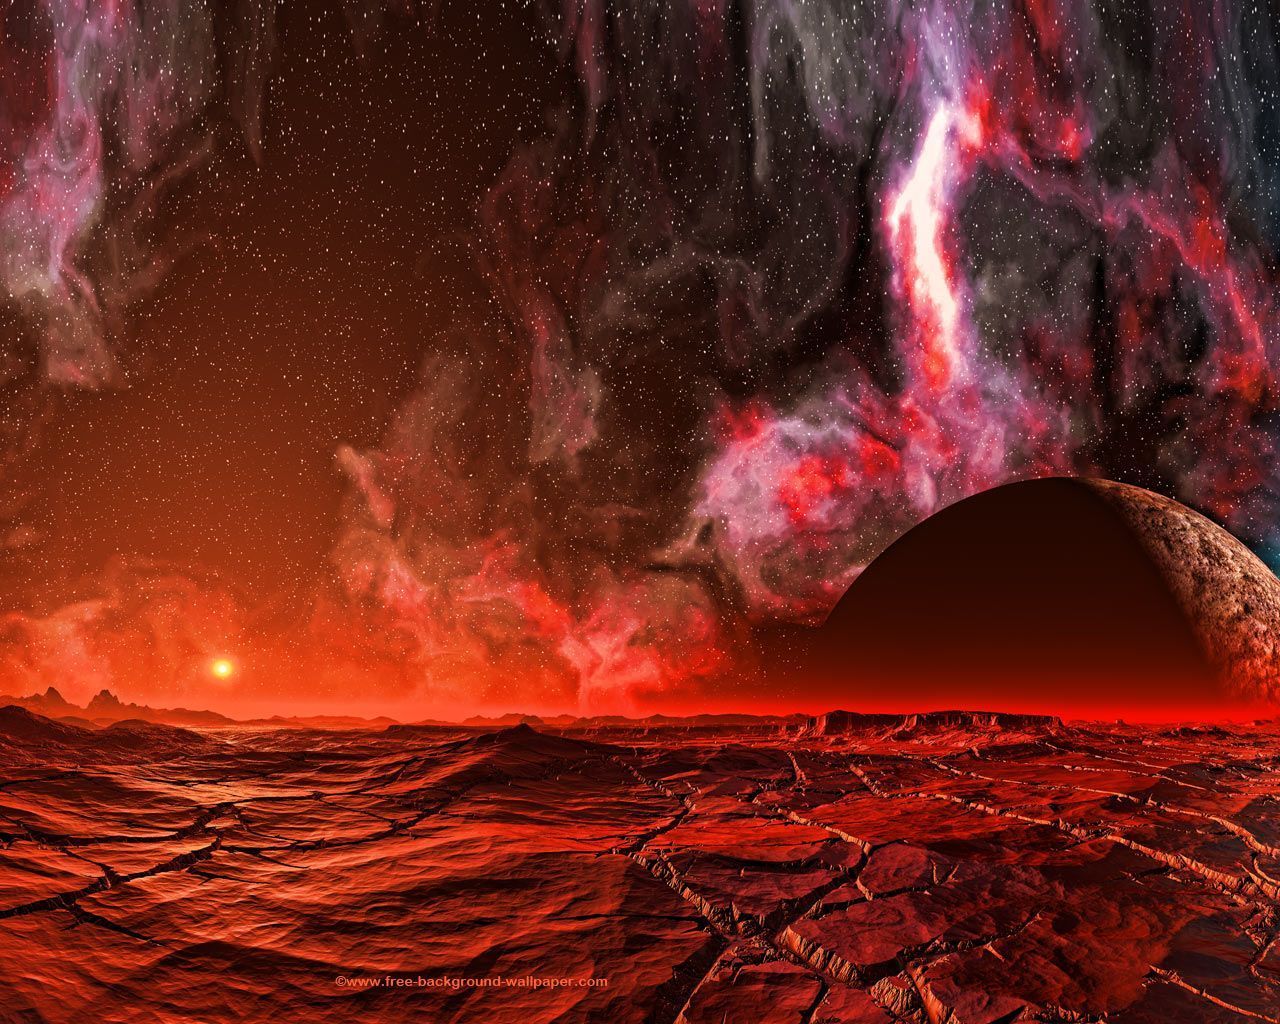 Martian Landscape Space Background Wallpaper - 1280x1024 pixels